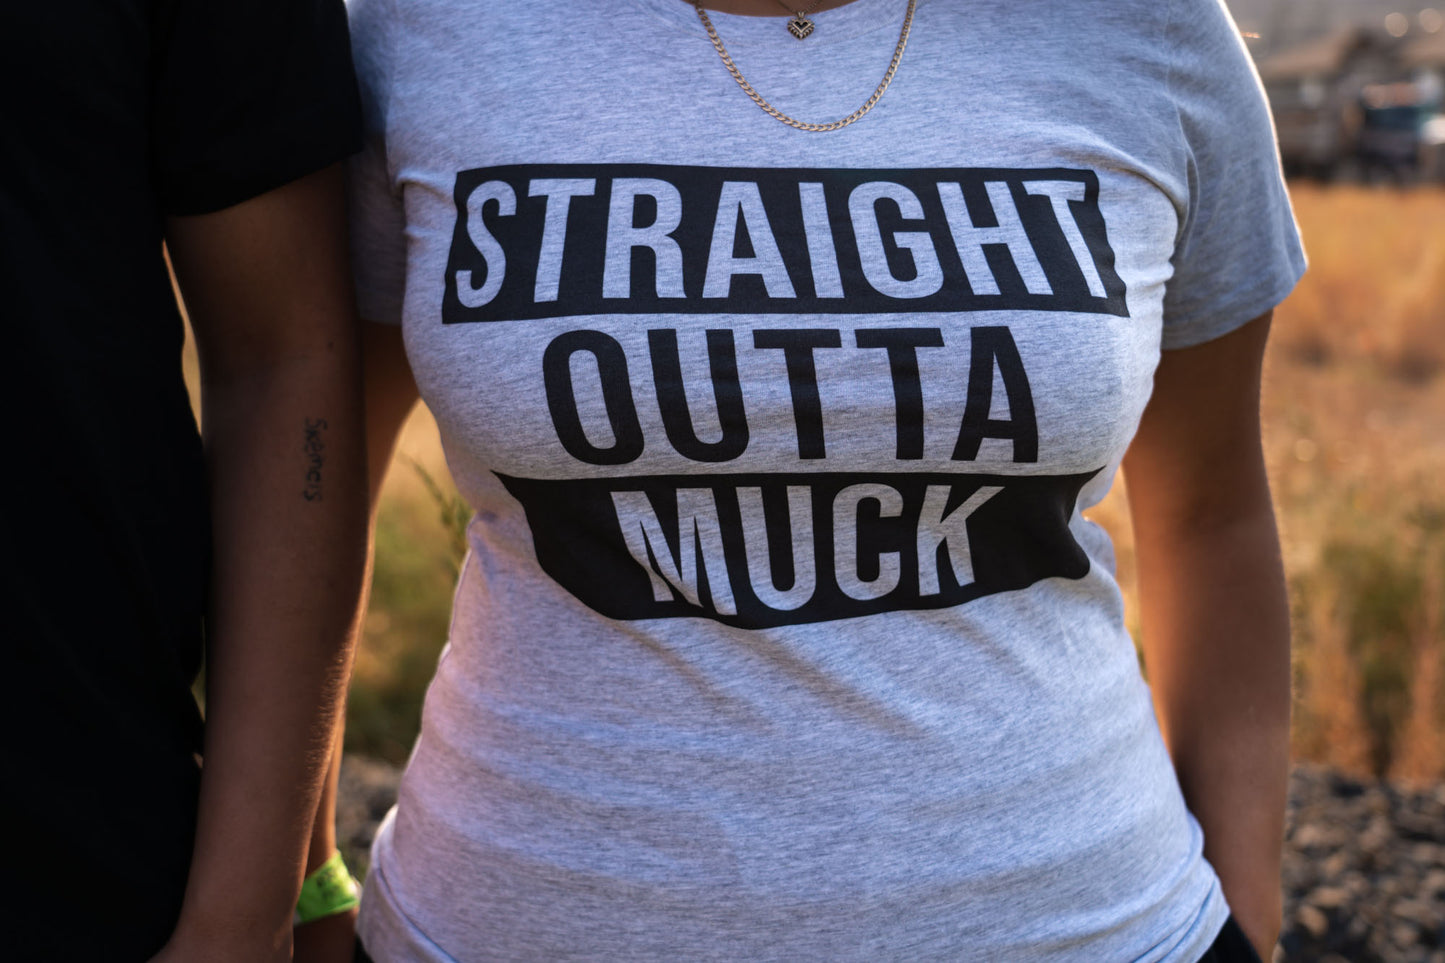 Muck T-Shirt